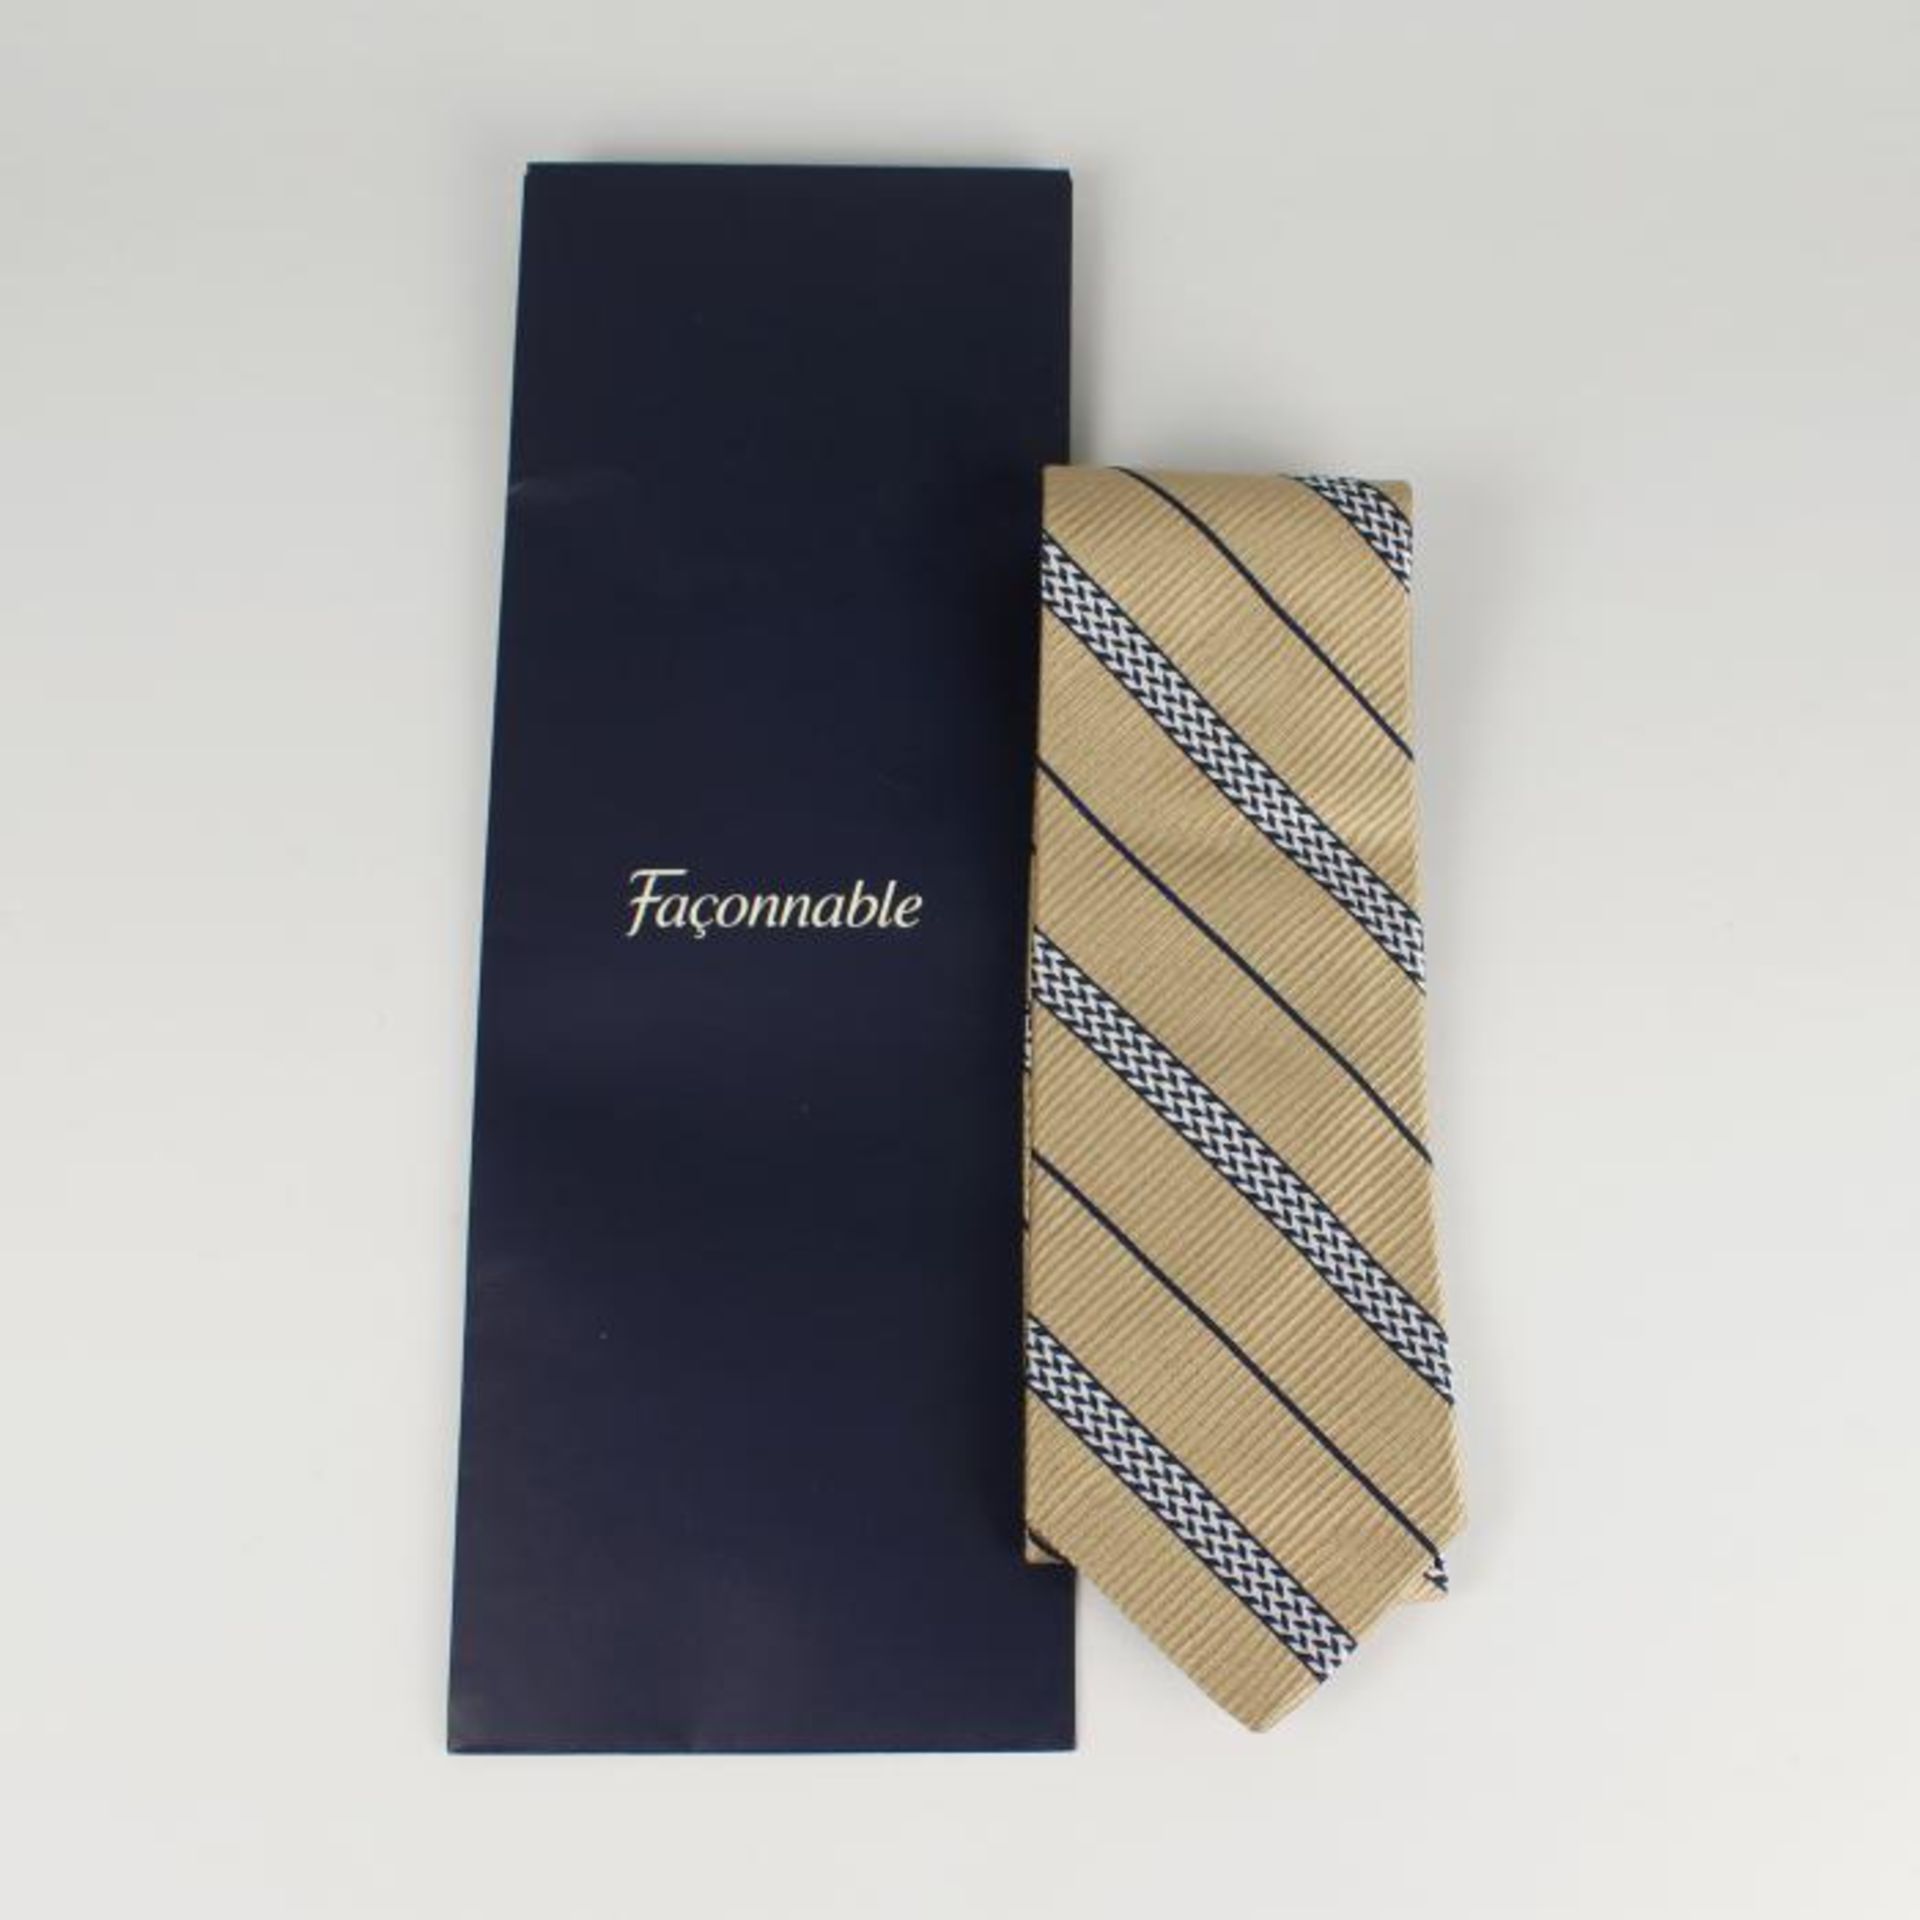 Faconnable - Krawatte100 % Seide, strukturiertes Streifendessin in gold, silber, blau, neu